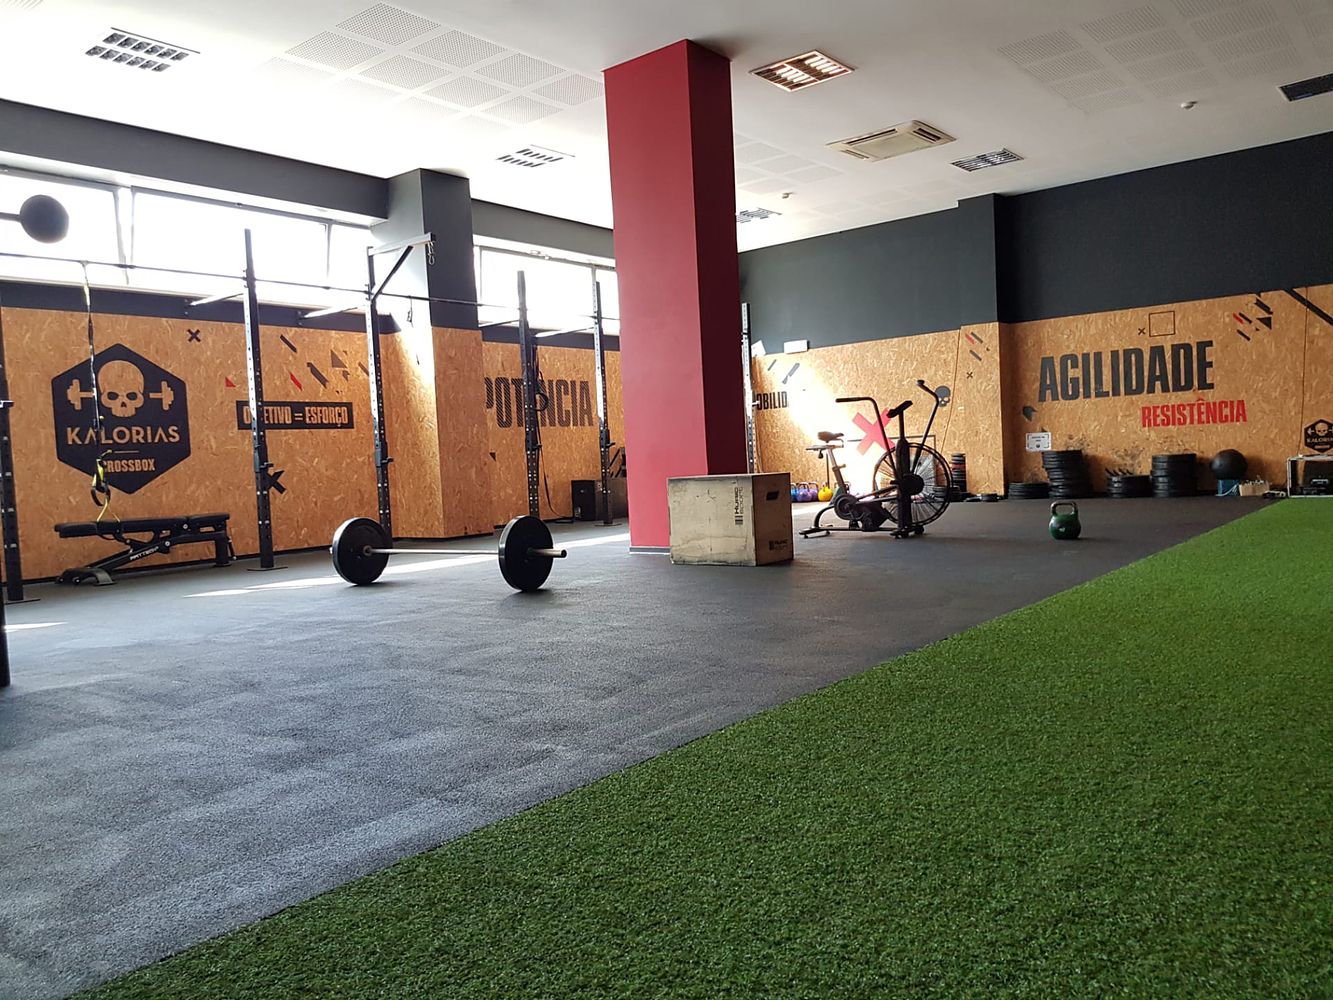 Kalorias Sines gym in Sines, Portugal